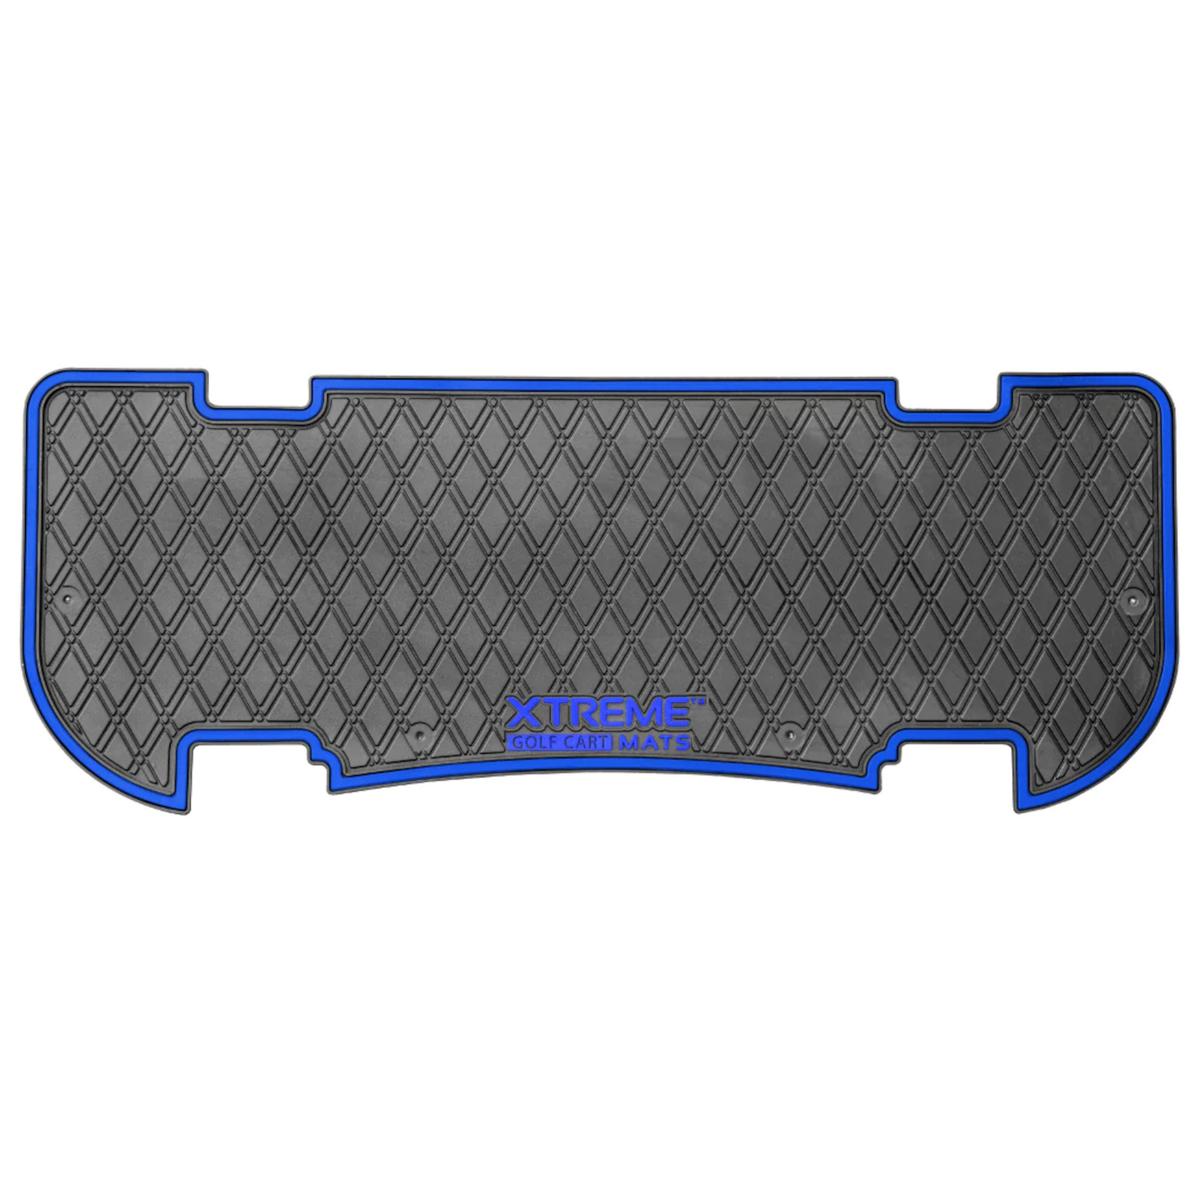 Xtreme Floor Mats for MadJax Genesis 250/300 Rear Seat Kits - Black/Blue